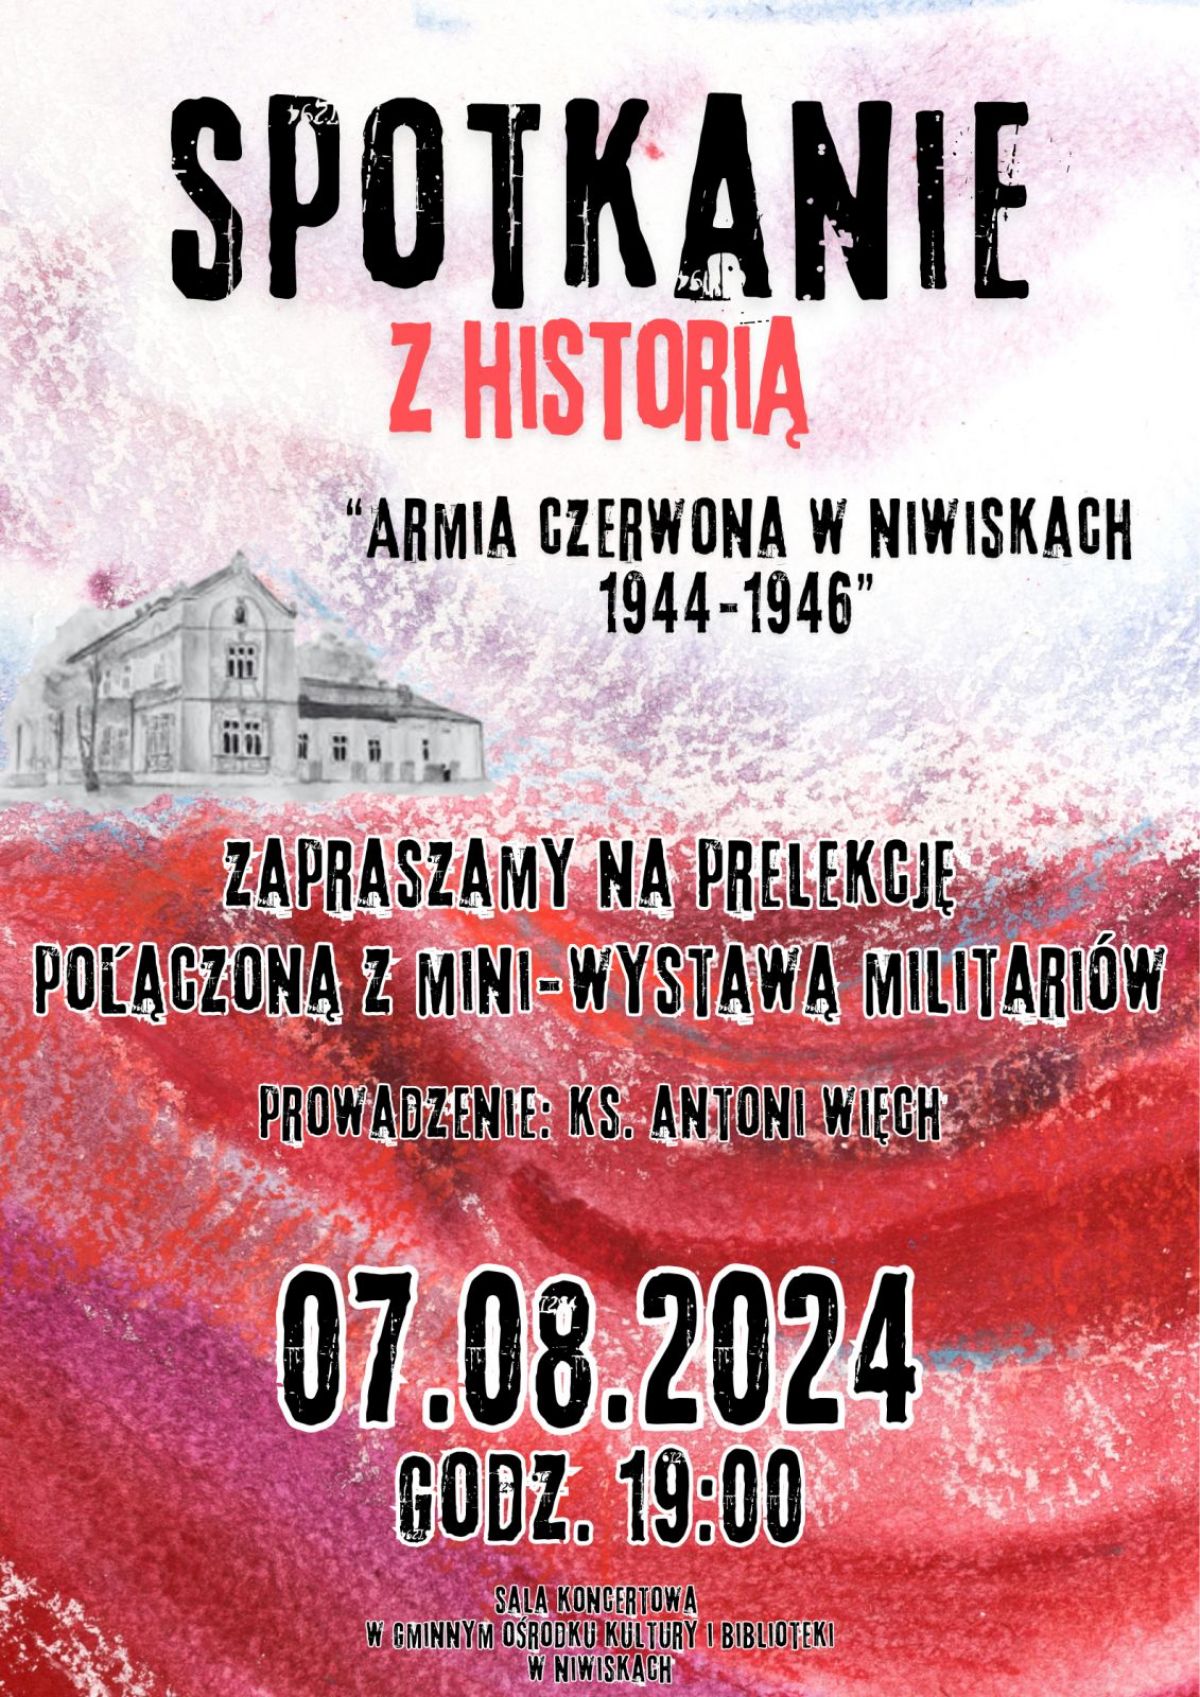 Spotkanie z historią - armia czerwona w Niwiskach 1944-1946